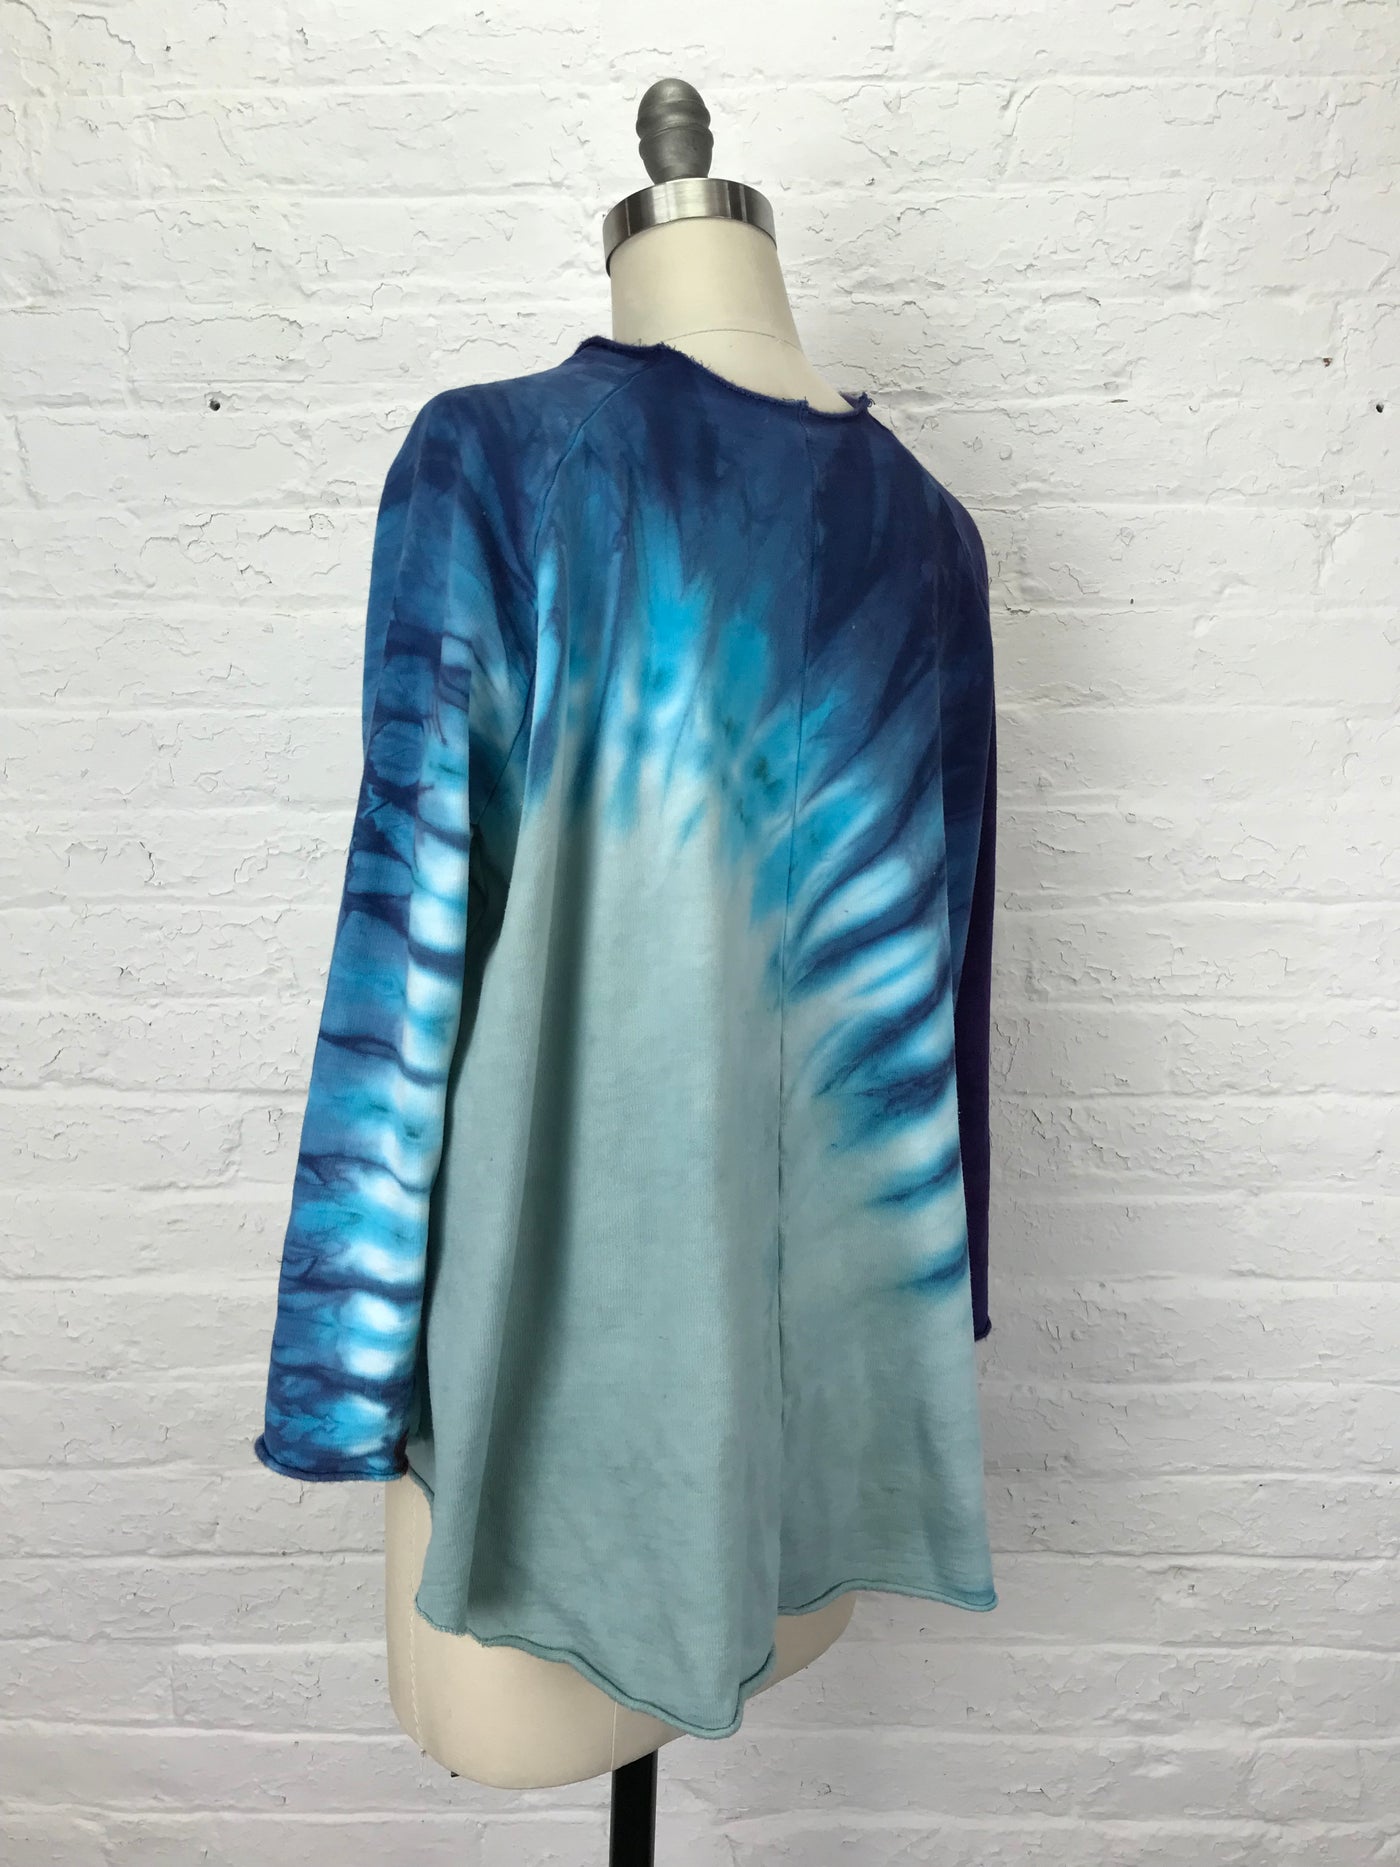 Fleece Raglan Sweatshirt in Magic Moon - One Size